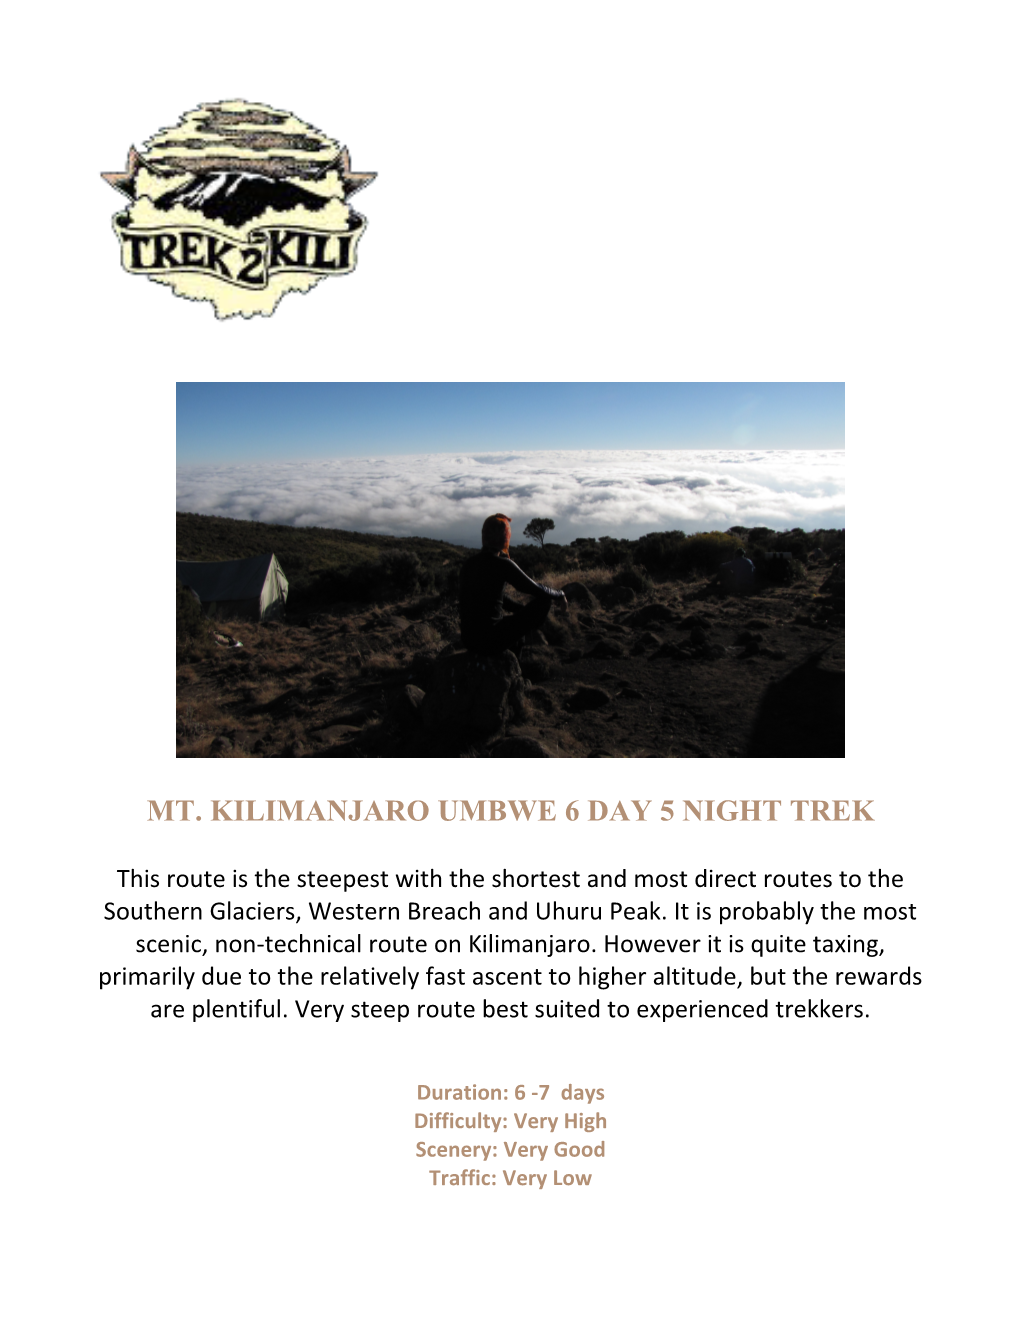 Mt. Kilimanjaro Umbwe 6 Day 5 Night Trek